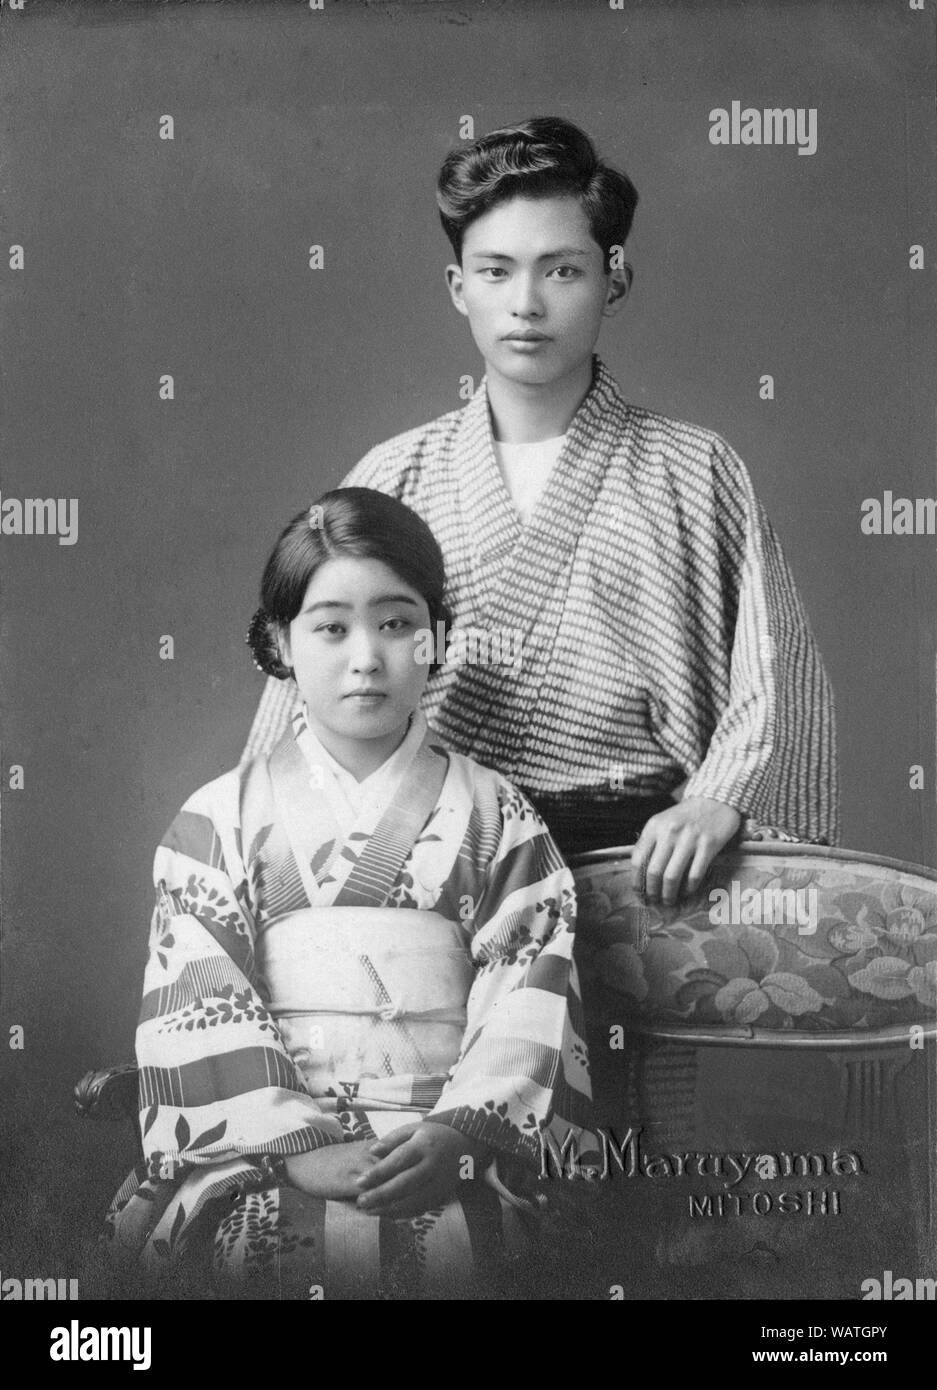 [ 1930 Japon - jeune japonaise et de l'homme ] - une jeune femme et l'homme, peut-être frère et sœur, poser dans un studio de photographie portant des vêtements traditionnels japonais. 20e siècle Tirage argentique d'époque. Banque D'Images